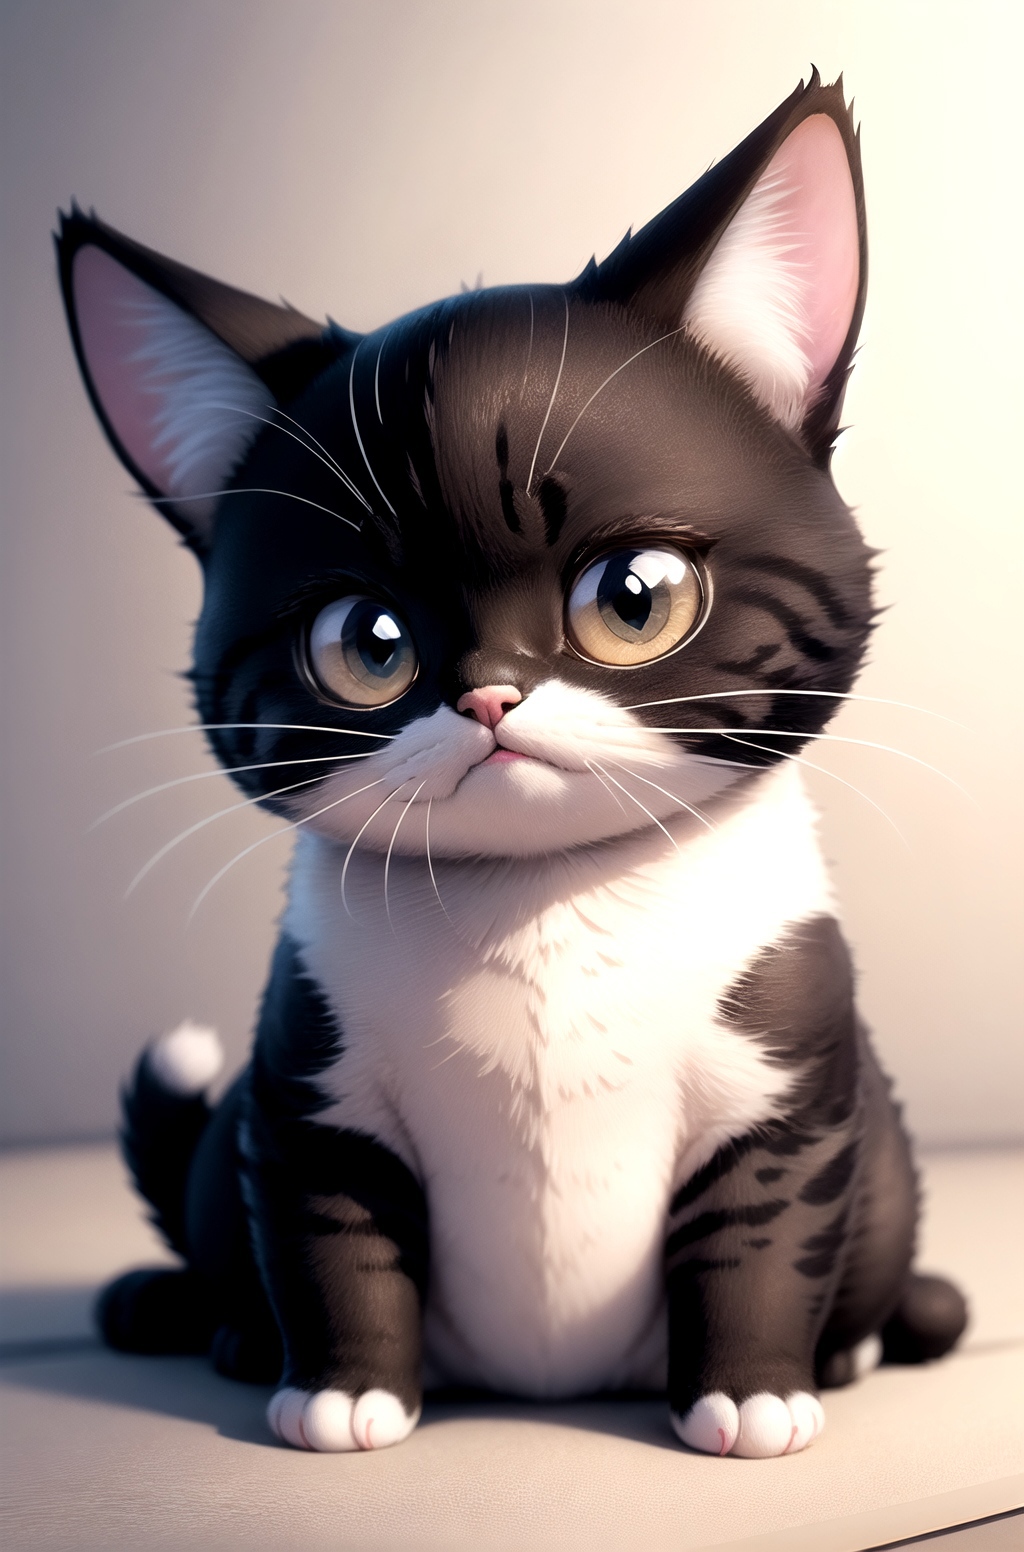 Kitty cat, chi image by PotatCat